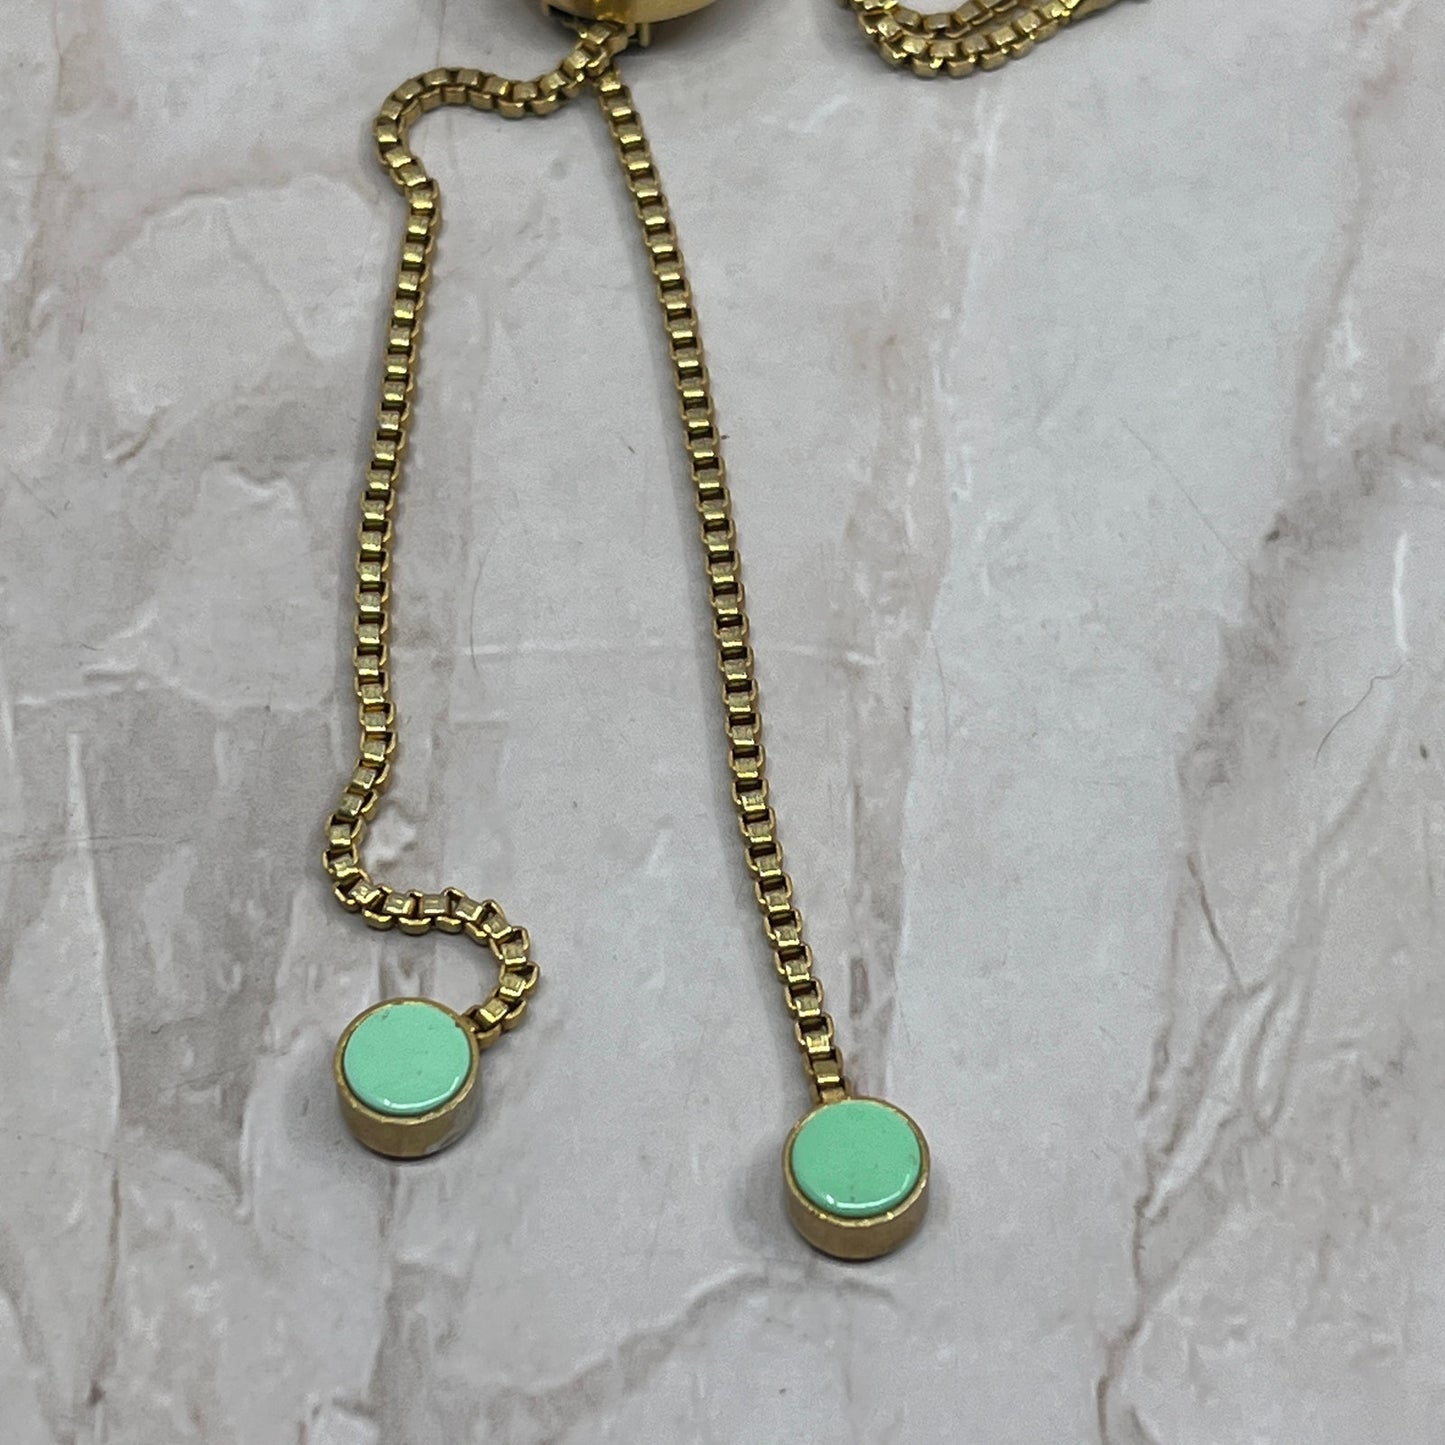 Vintage Gold & Jade Tone Ladies Bolo Tie Necklace SB3